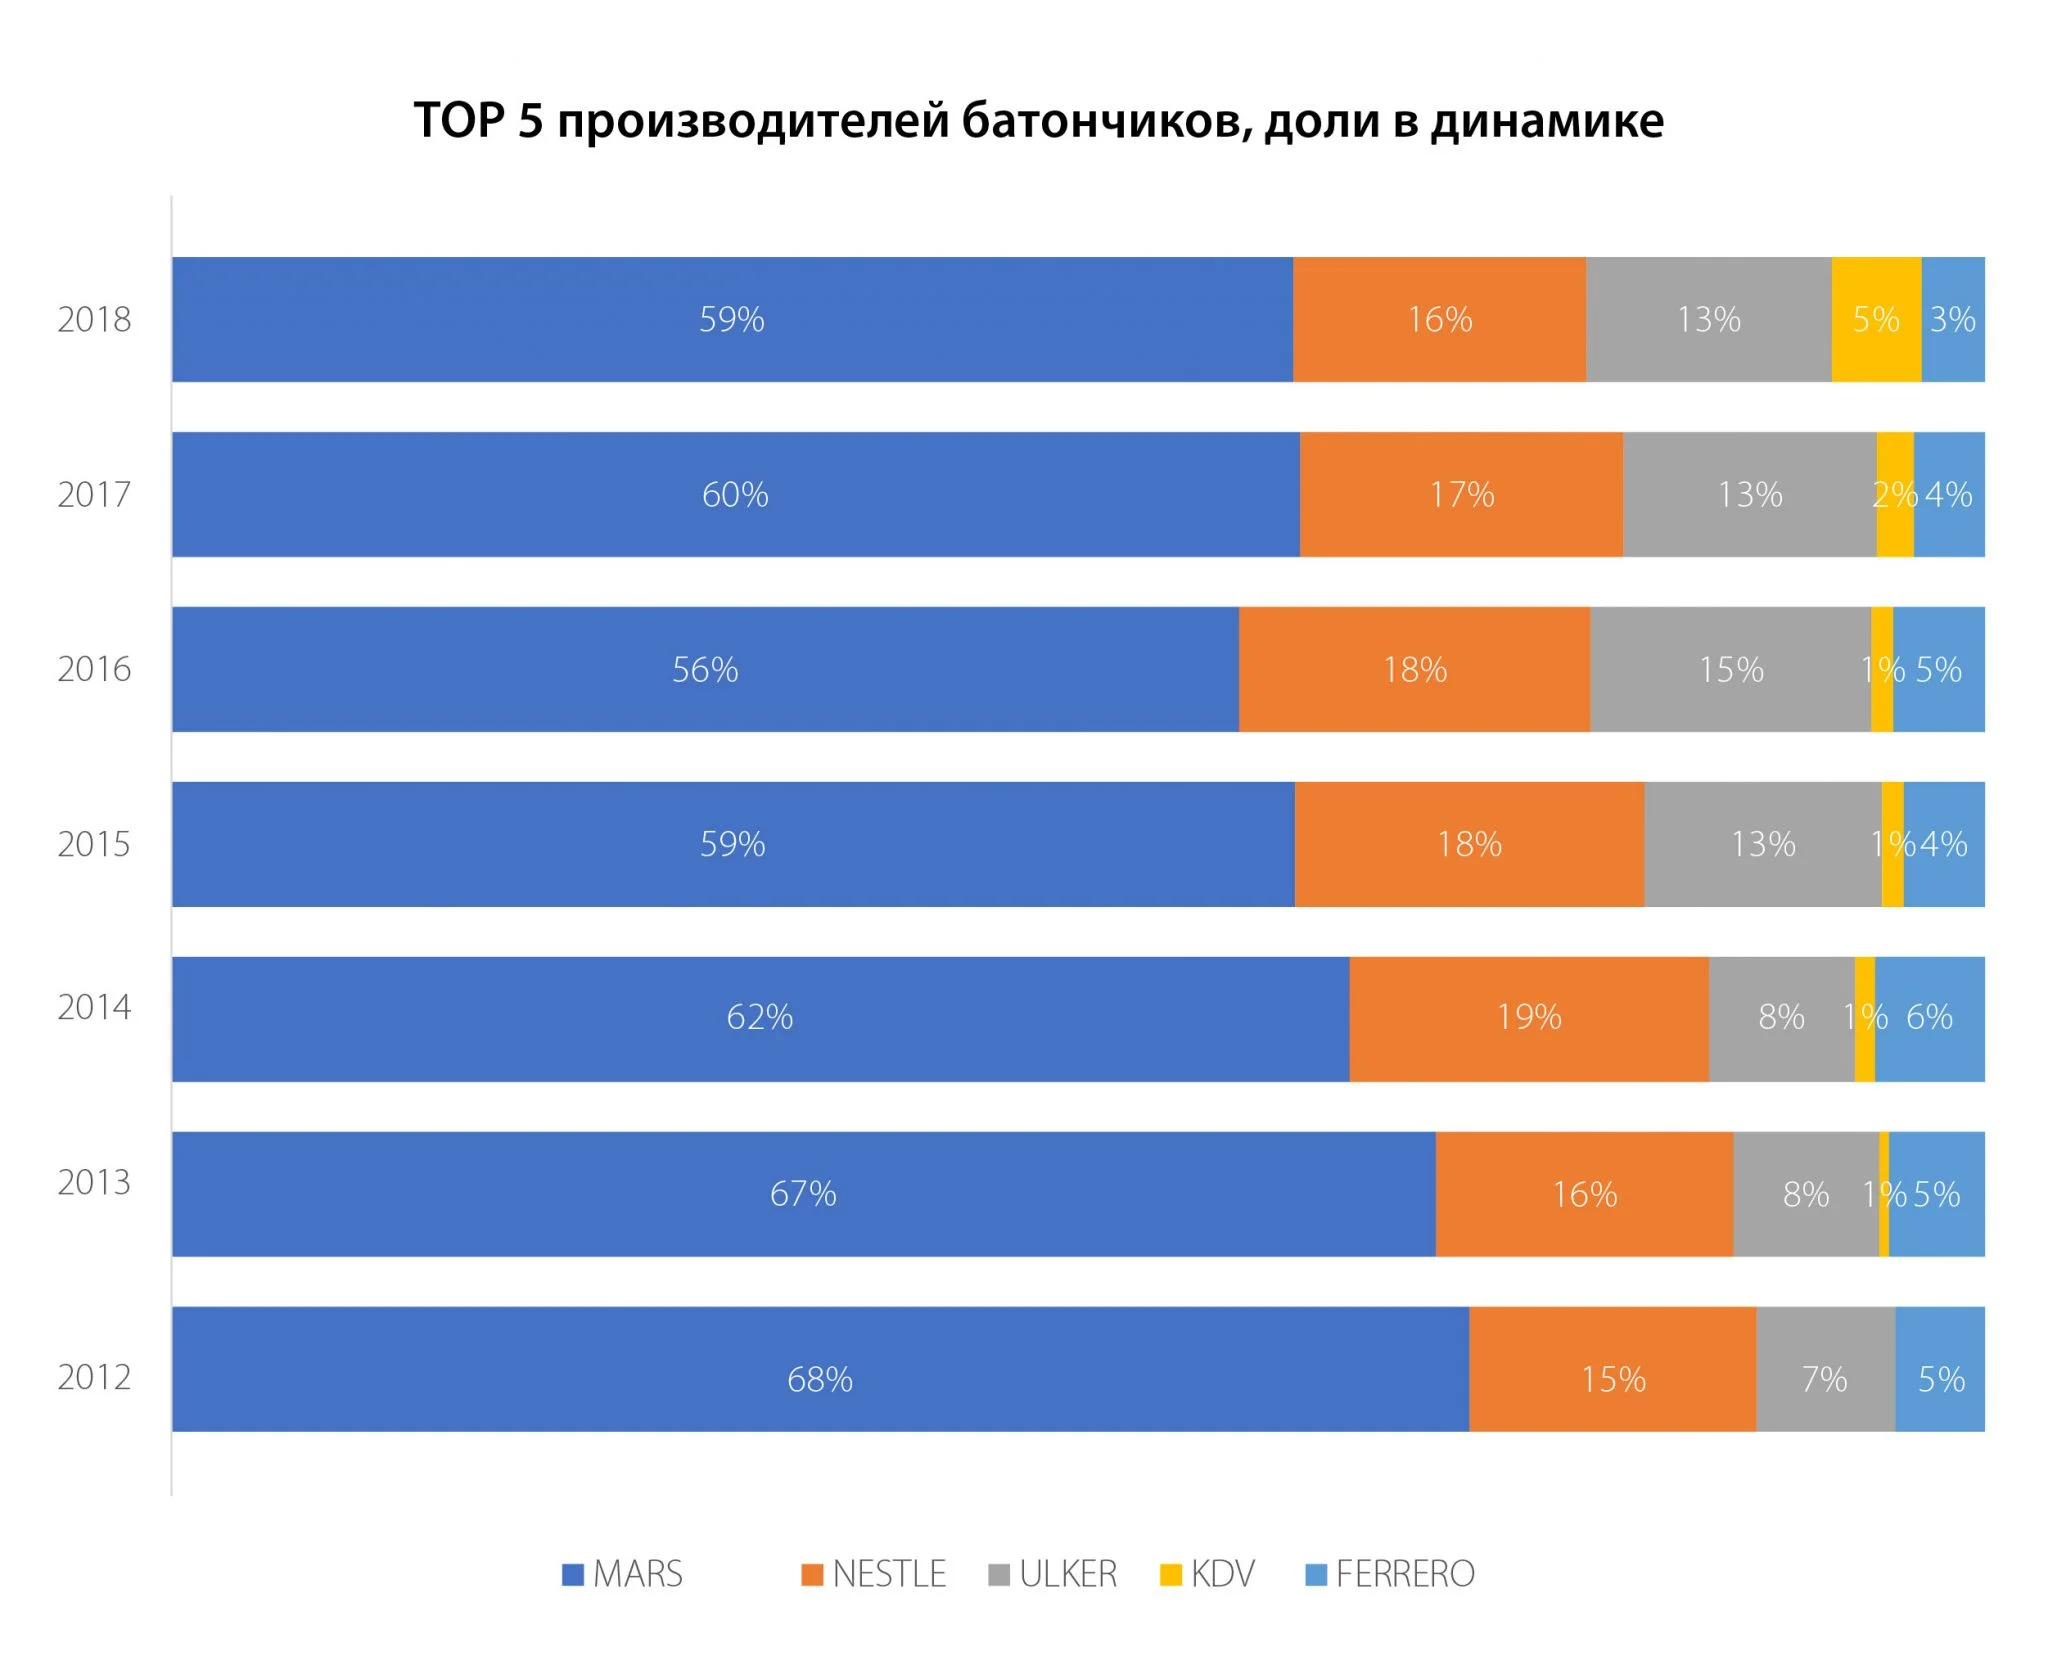 Рынок батончиков Алматы в 2012-2018 гг